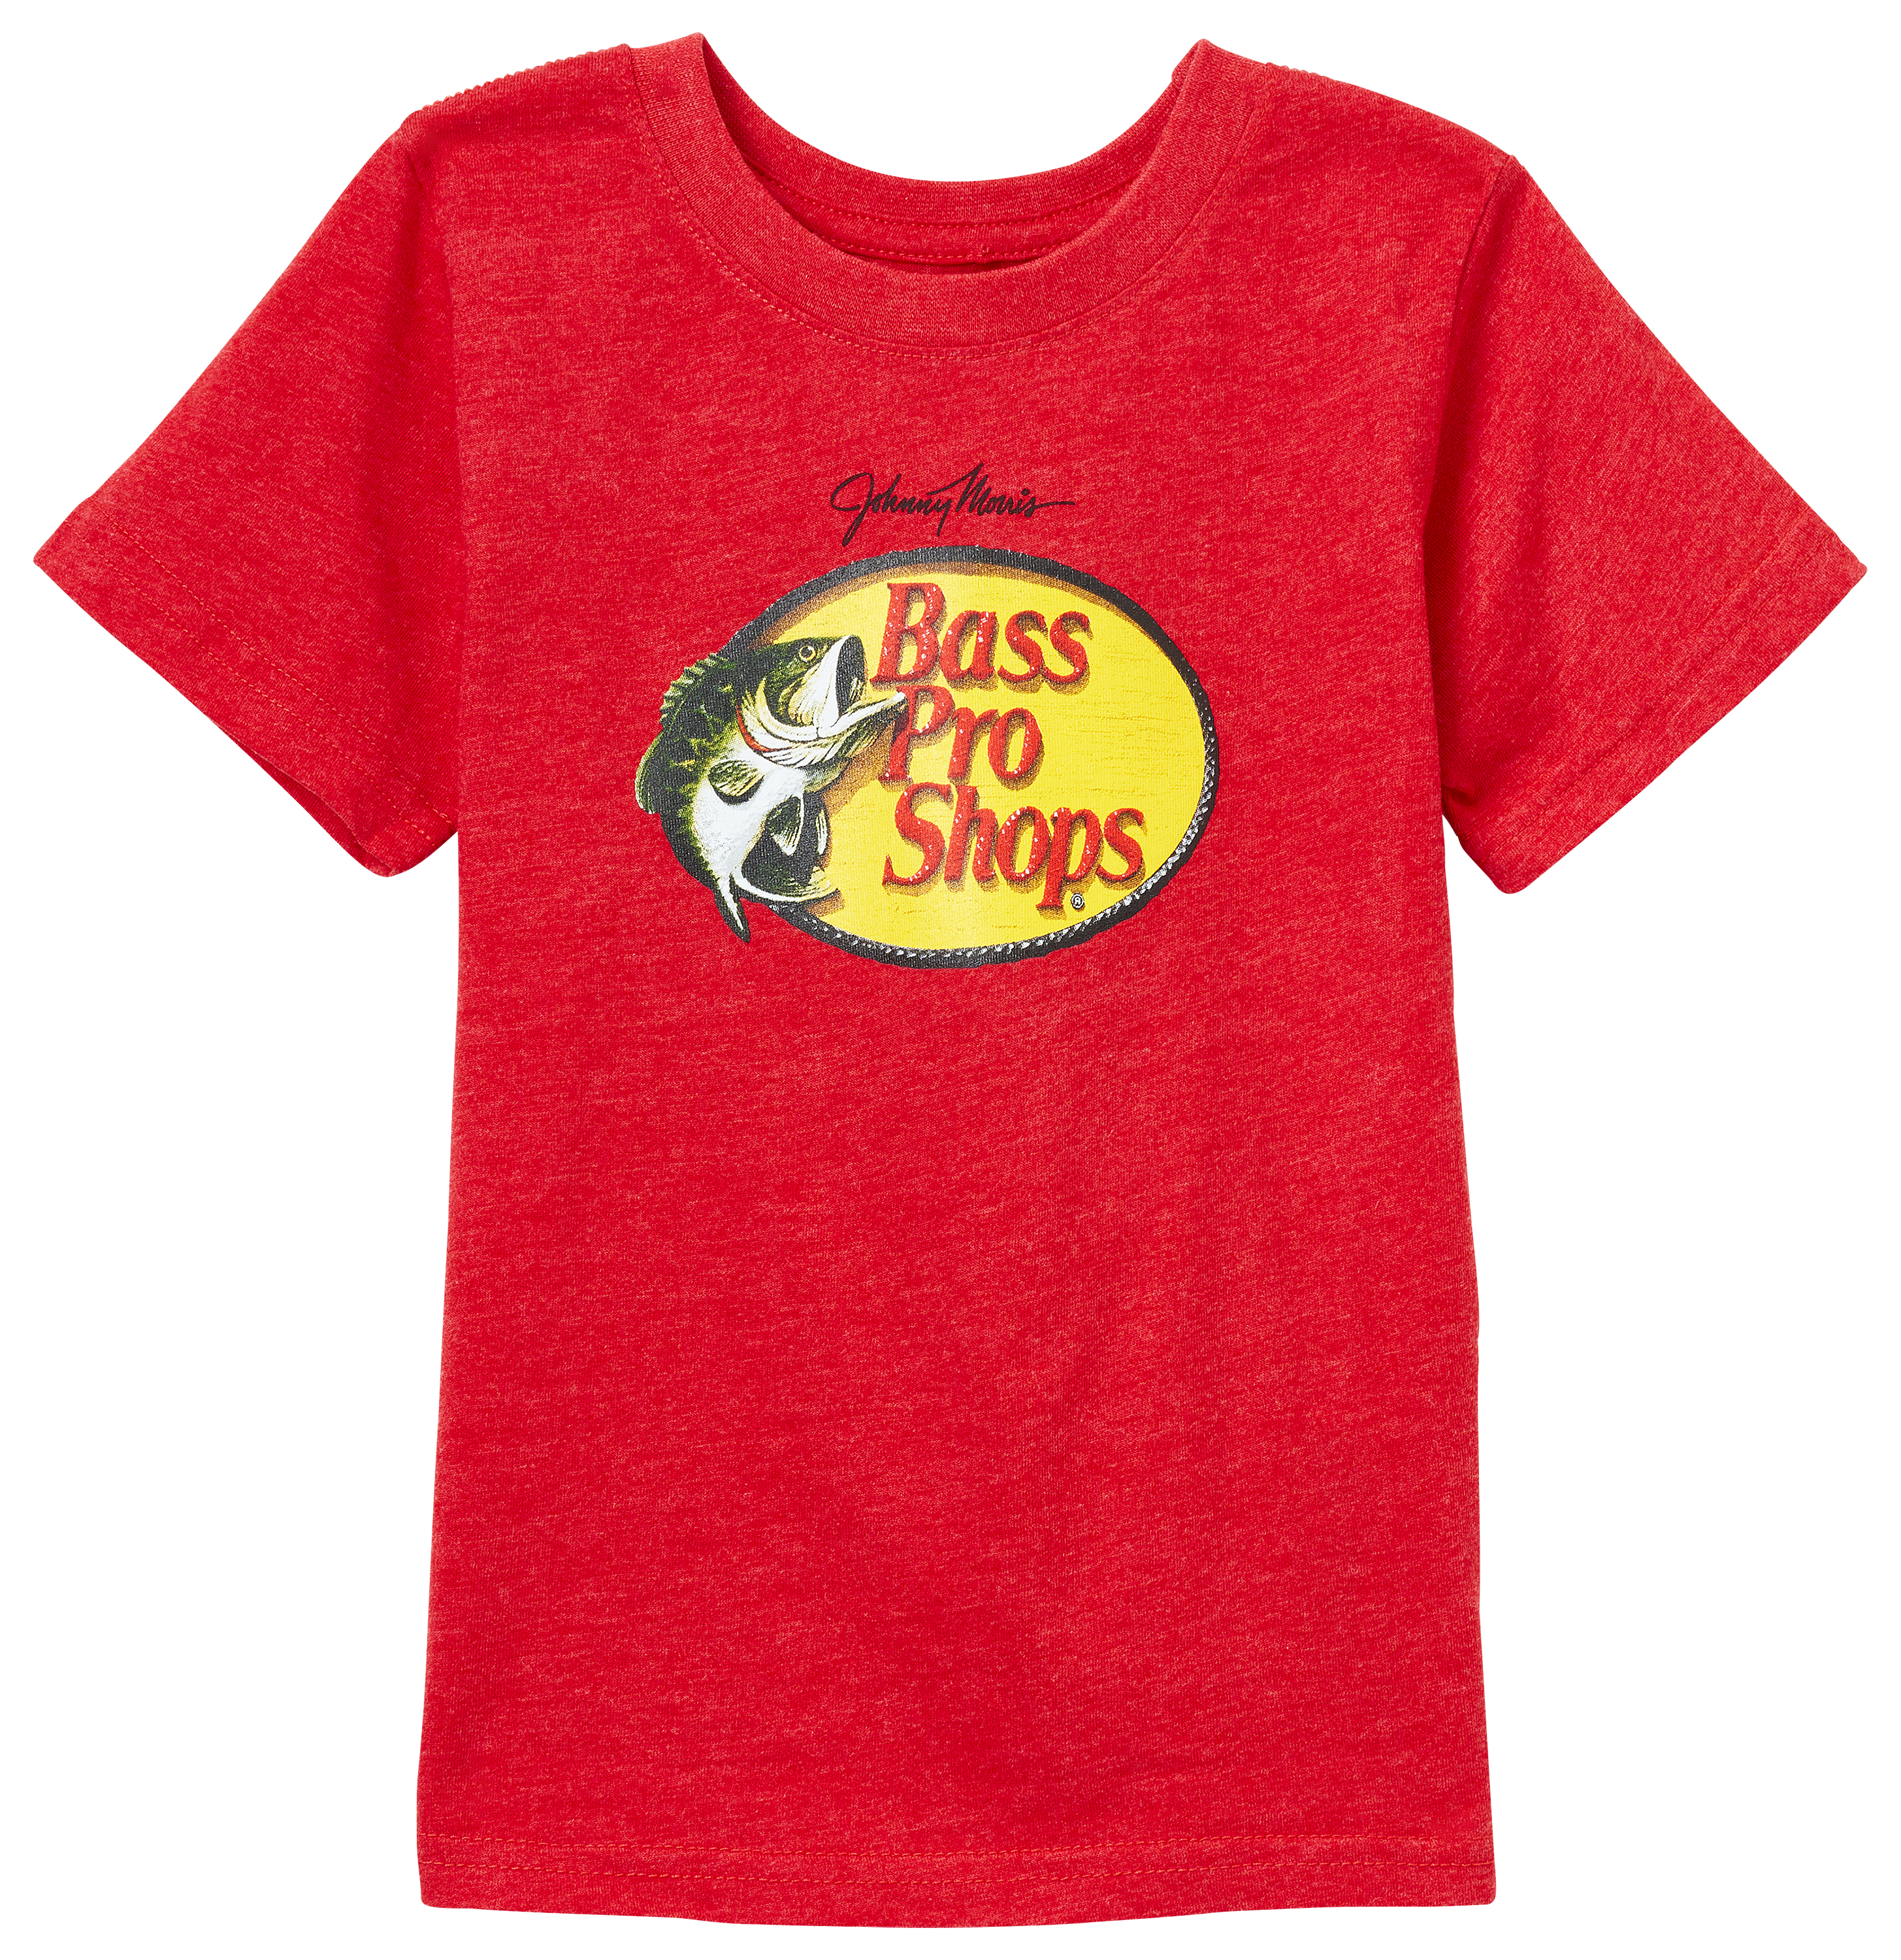 Bass Pro Shops Woodcut Short-Sleeve T-Shirt for Kids - Pink - S